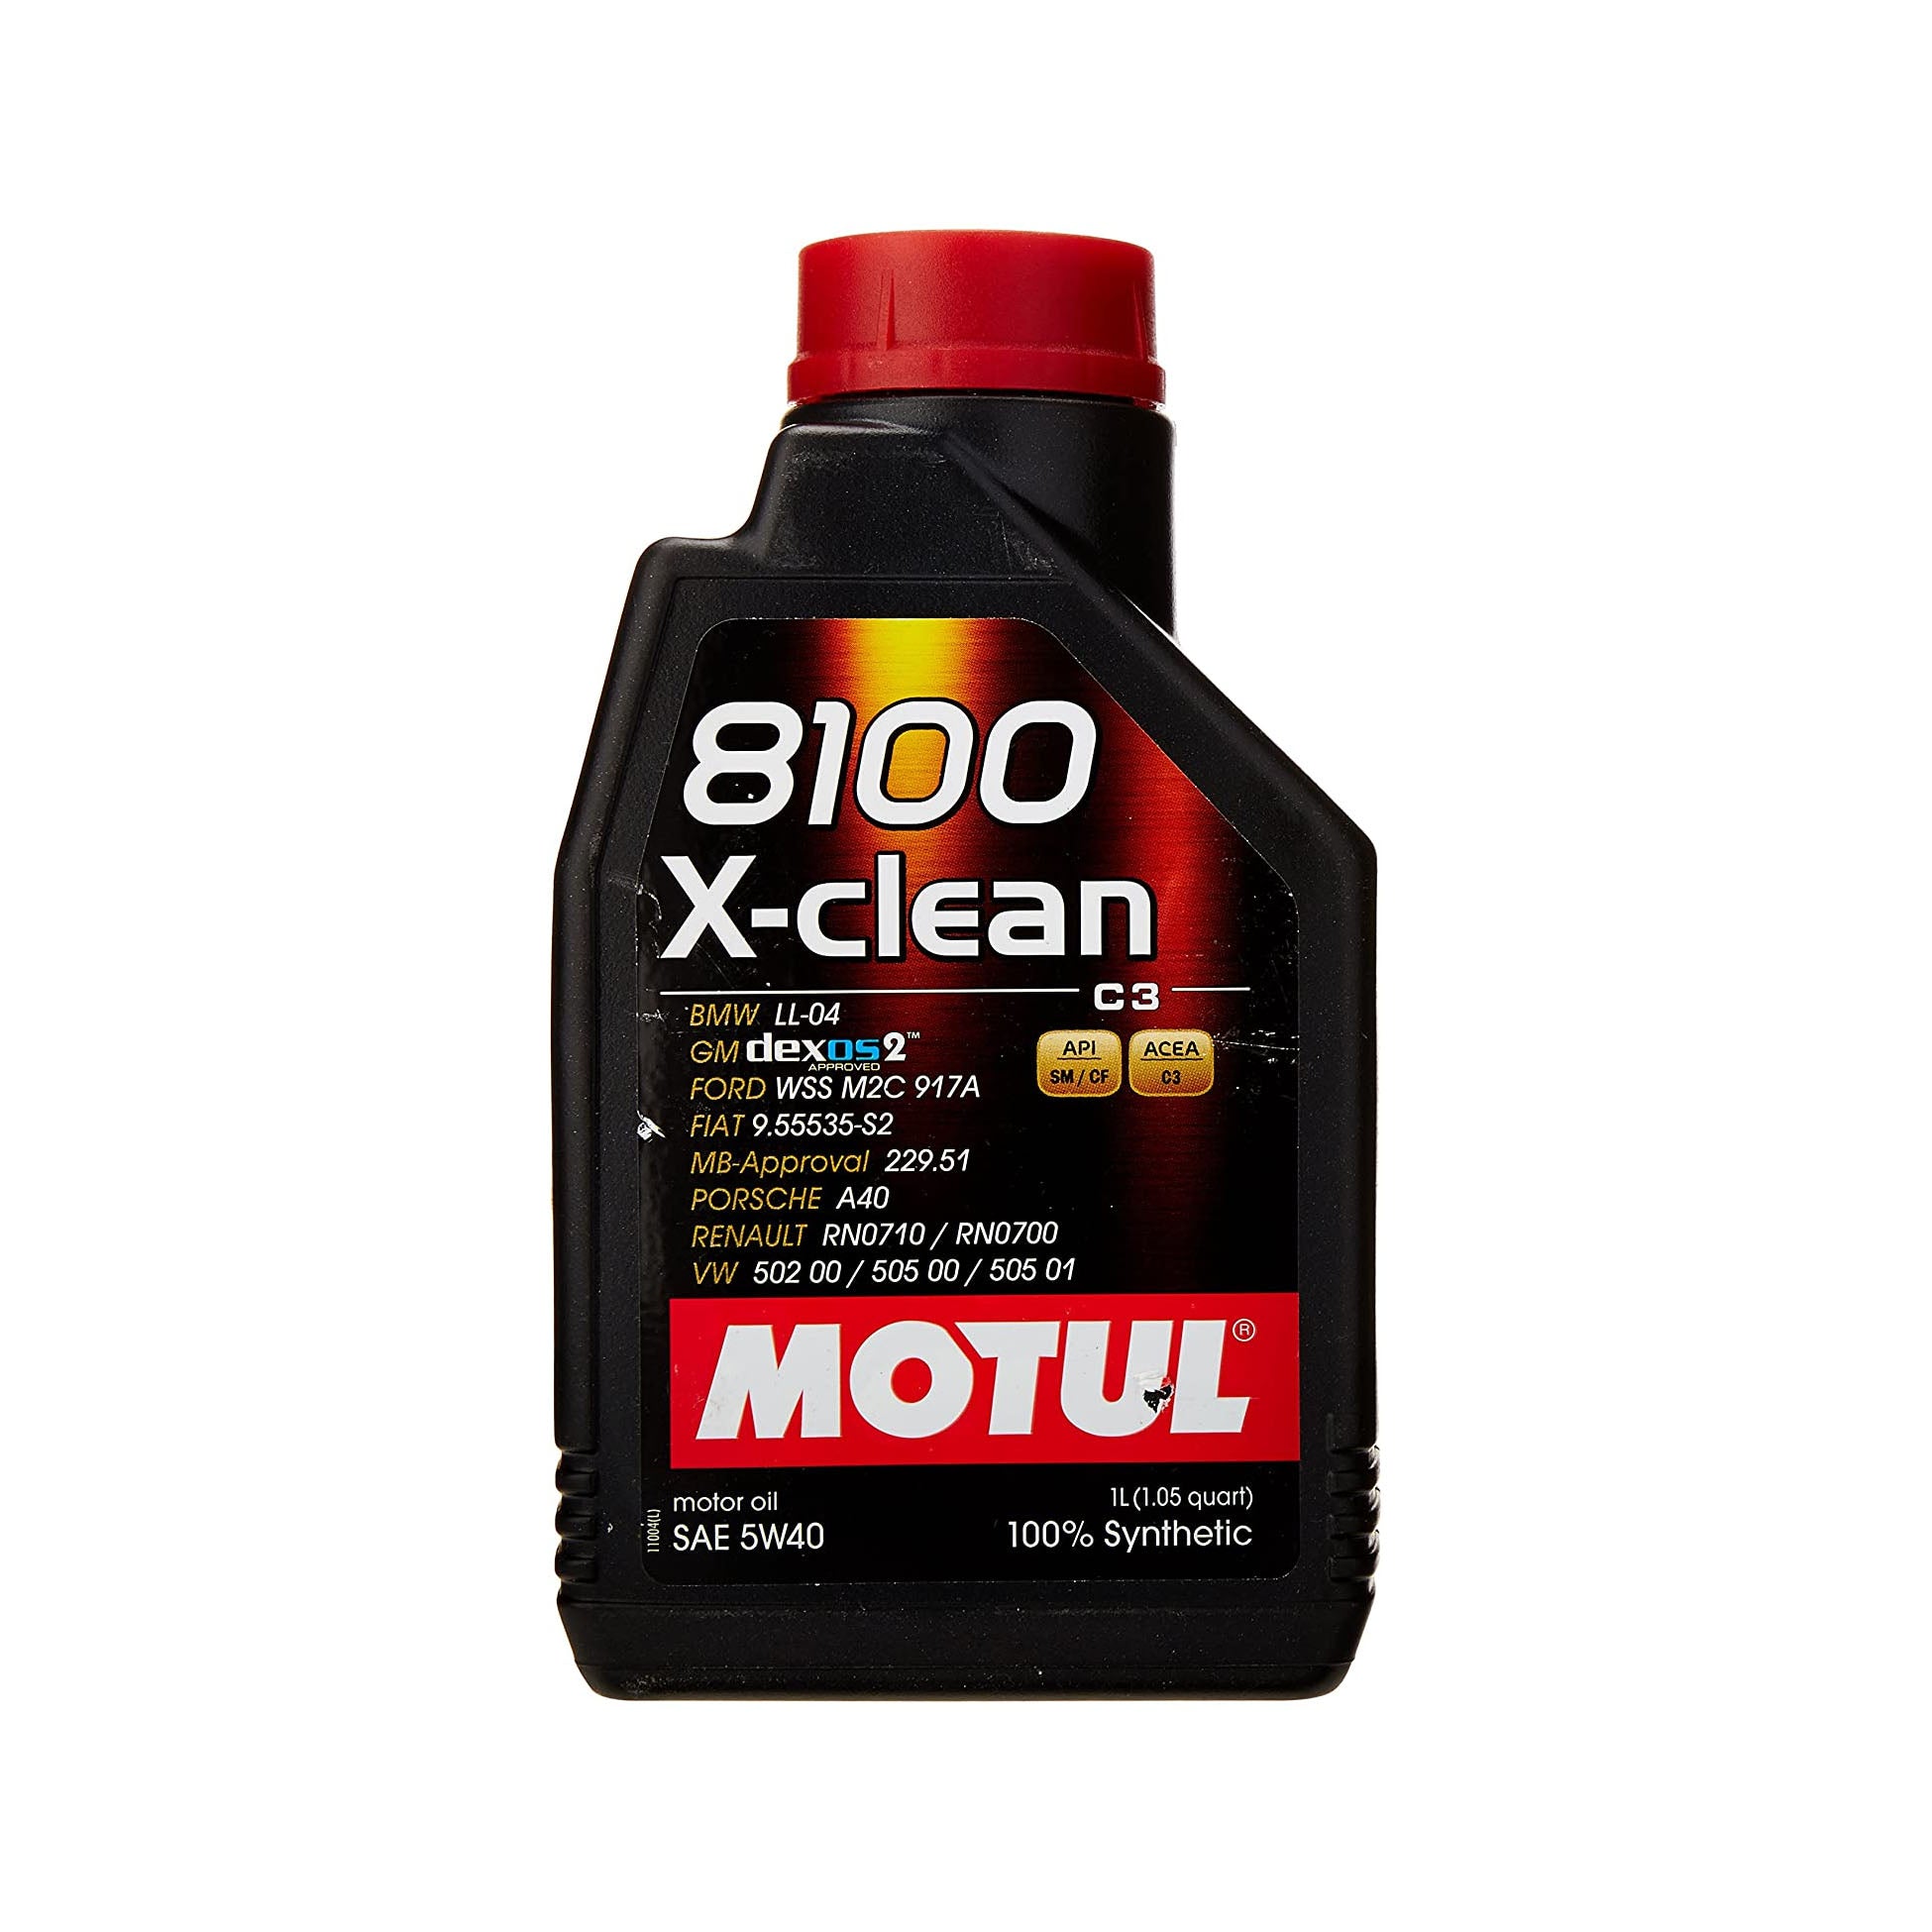 Motul 8100 X-Clean C3 5W40 Motor Oil 1-Liter Bottle